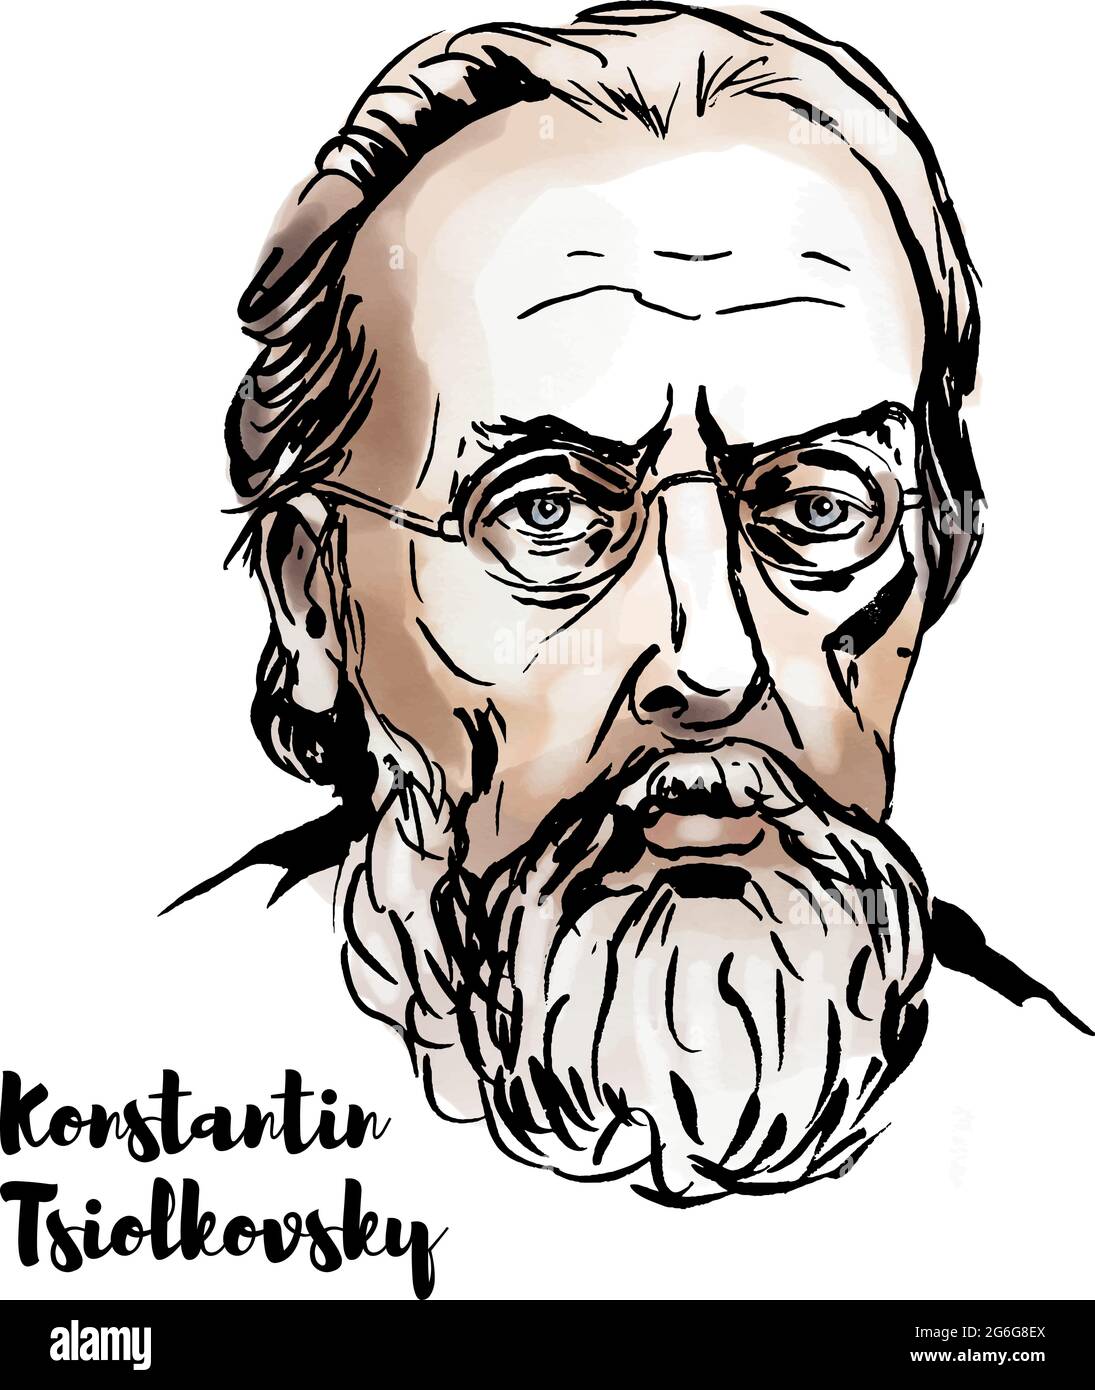 MOSCA, RUSSIA - OTTOBRE 24, 2018: Konstantin Tsiolkovsky ritratto vettoriale acquerello con contorni a inchiostro. Russo e sovietico razzo scienziato e pioniere Illustrazione Vettoriale